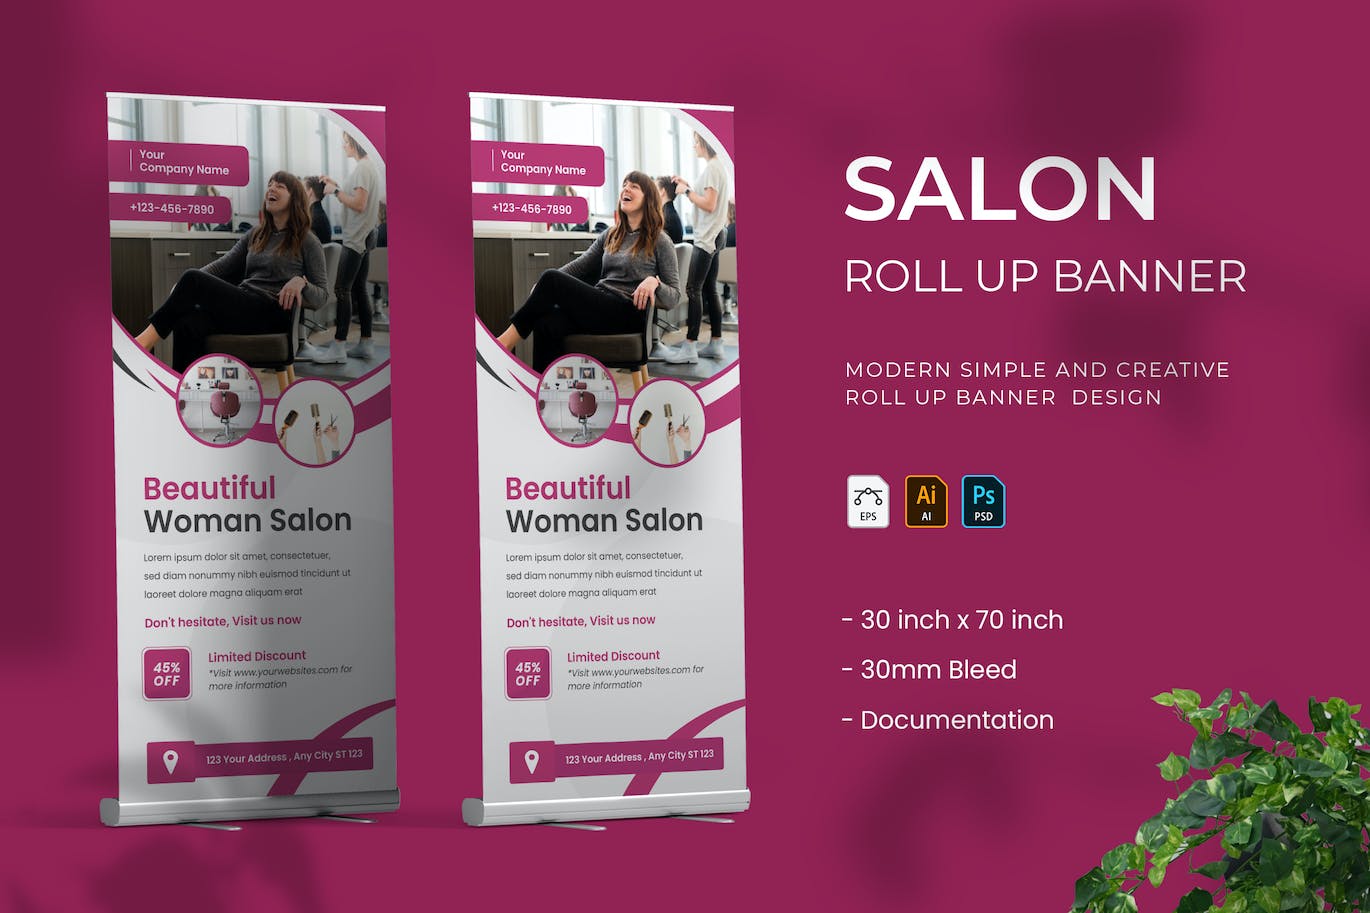 美发沙龙广告易拉宝模板 Salon – Roll UP Banner 设计素材 第1张